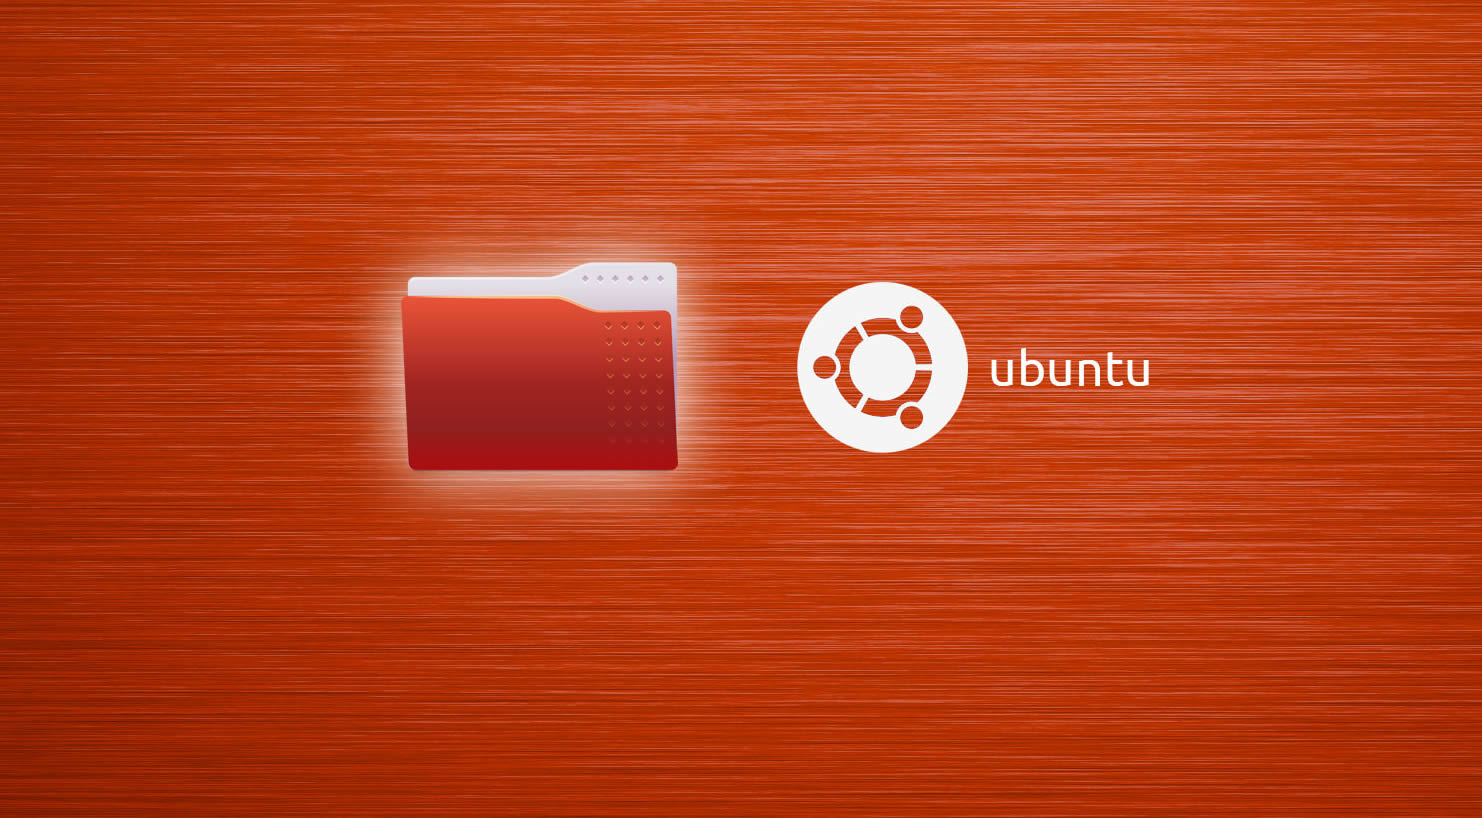 Ubuntuda Otomount, Ana Klasörlerin Yolunu Değiştirme